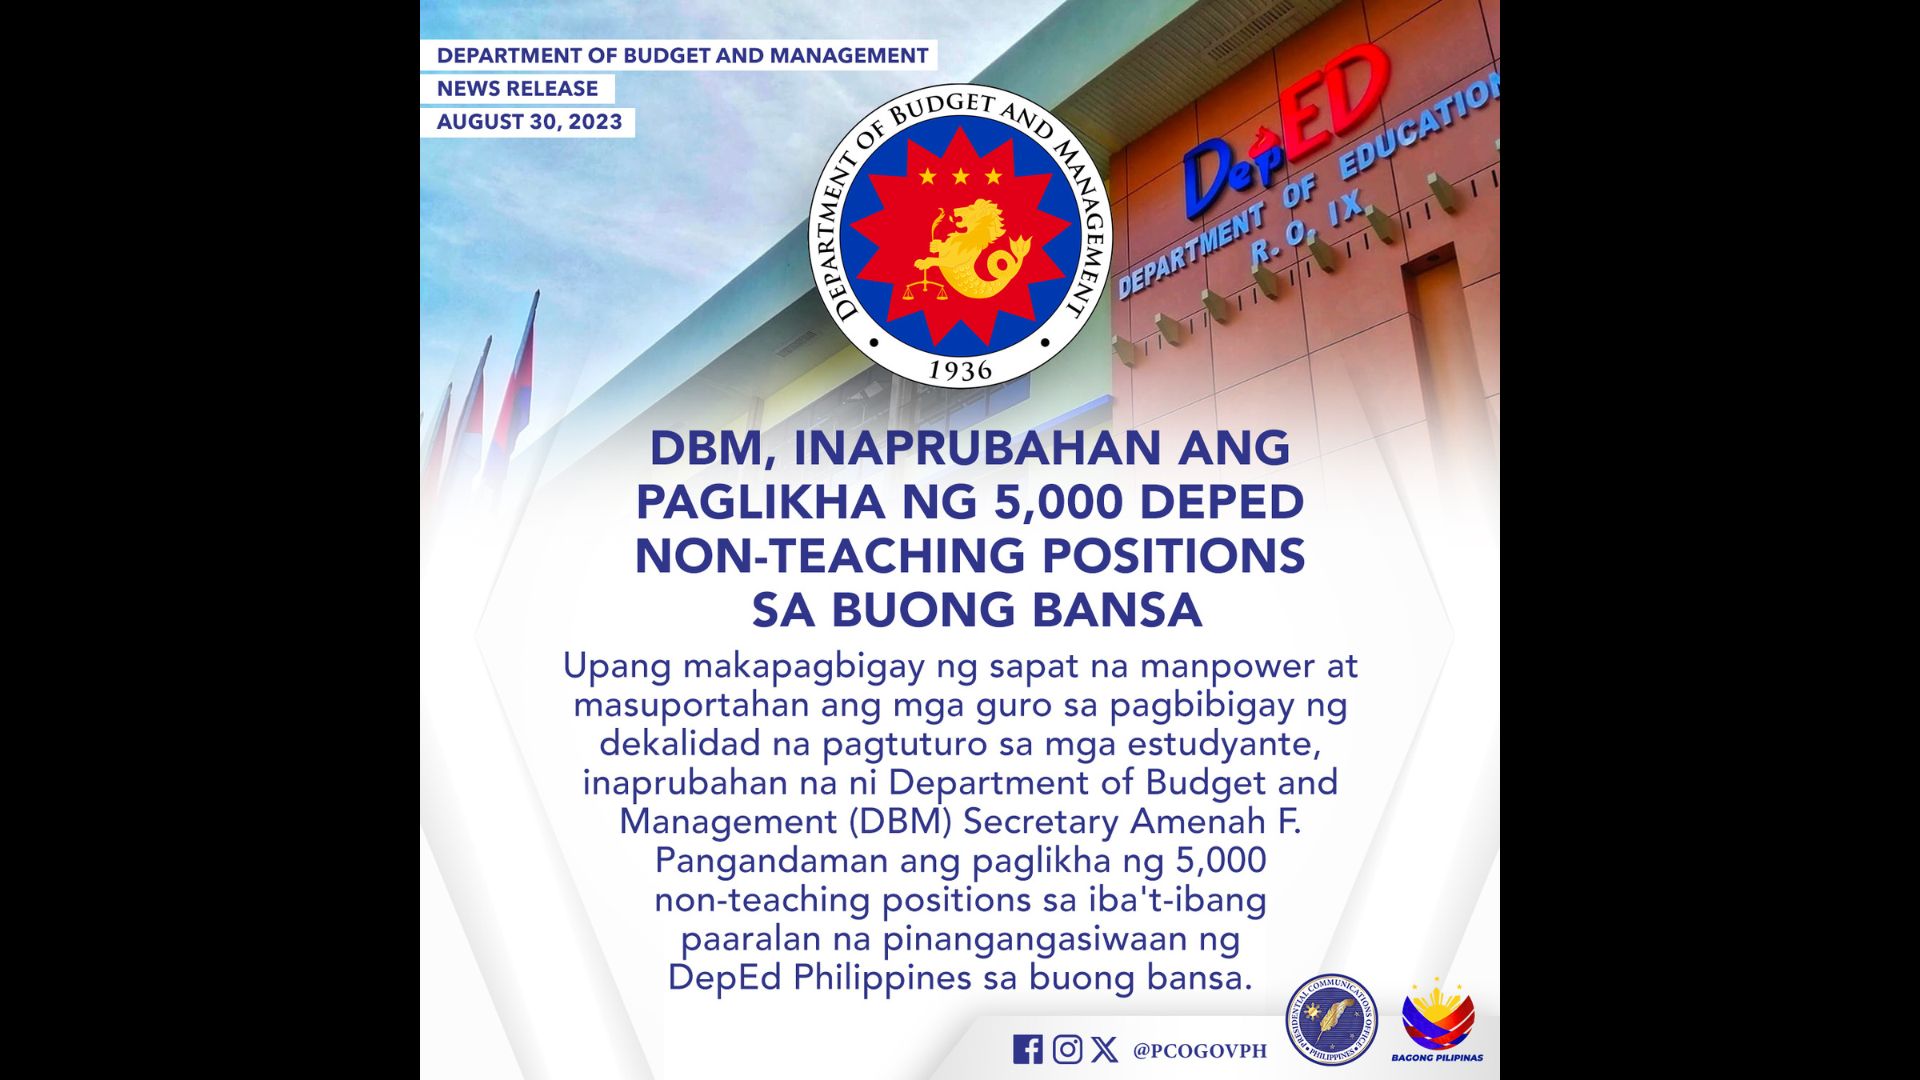 Paglikha ng 5,000 non-teaching positions sa DepEd, inaprubahan ng DBM